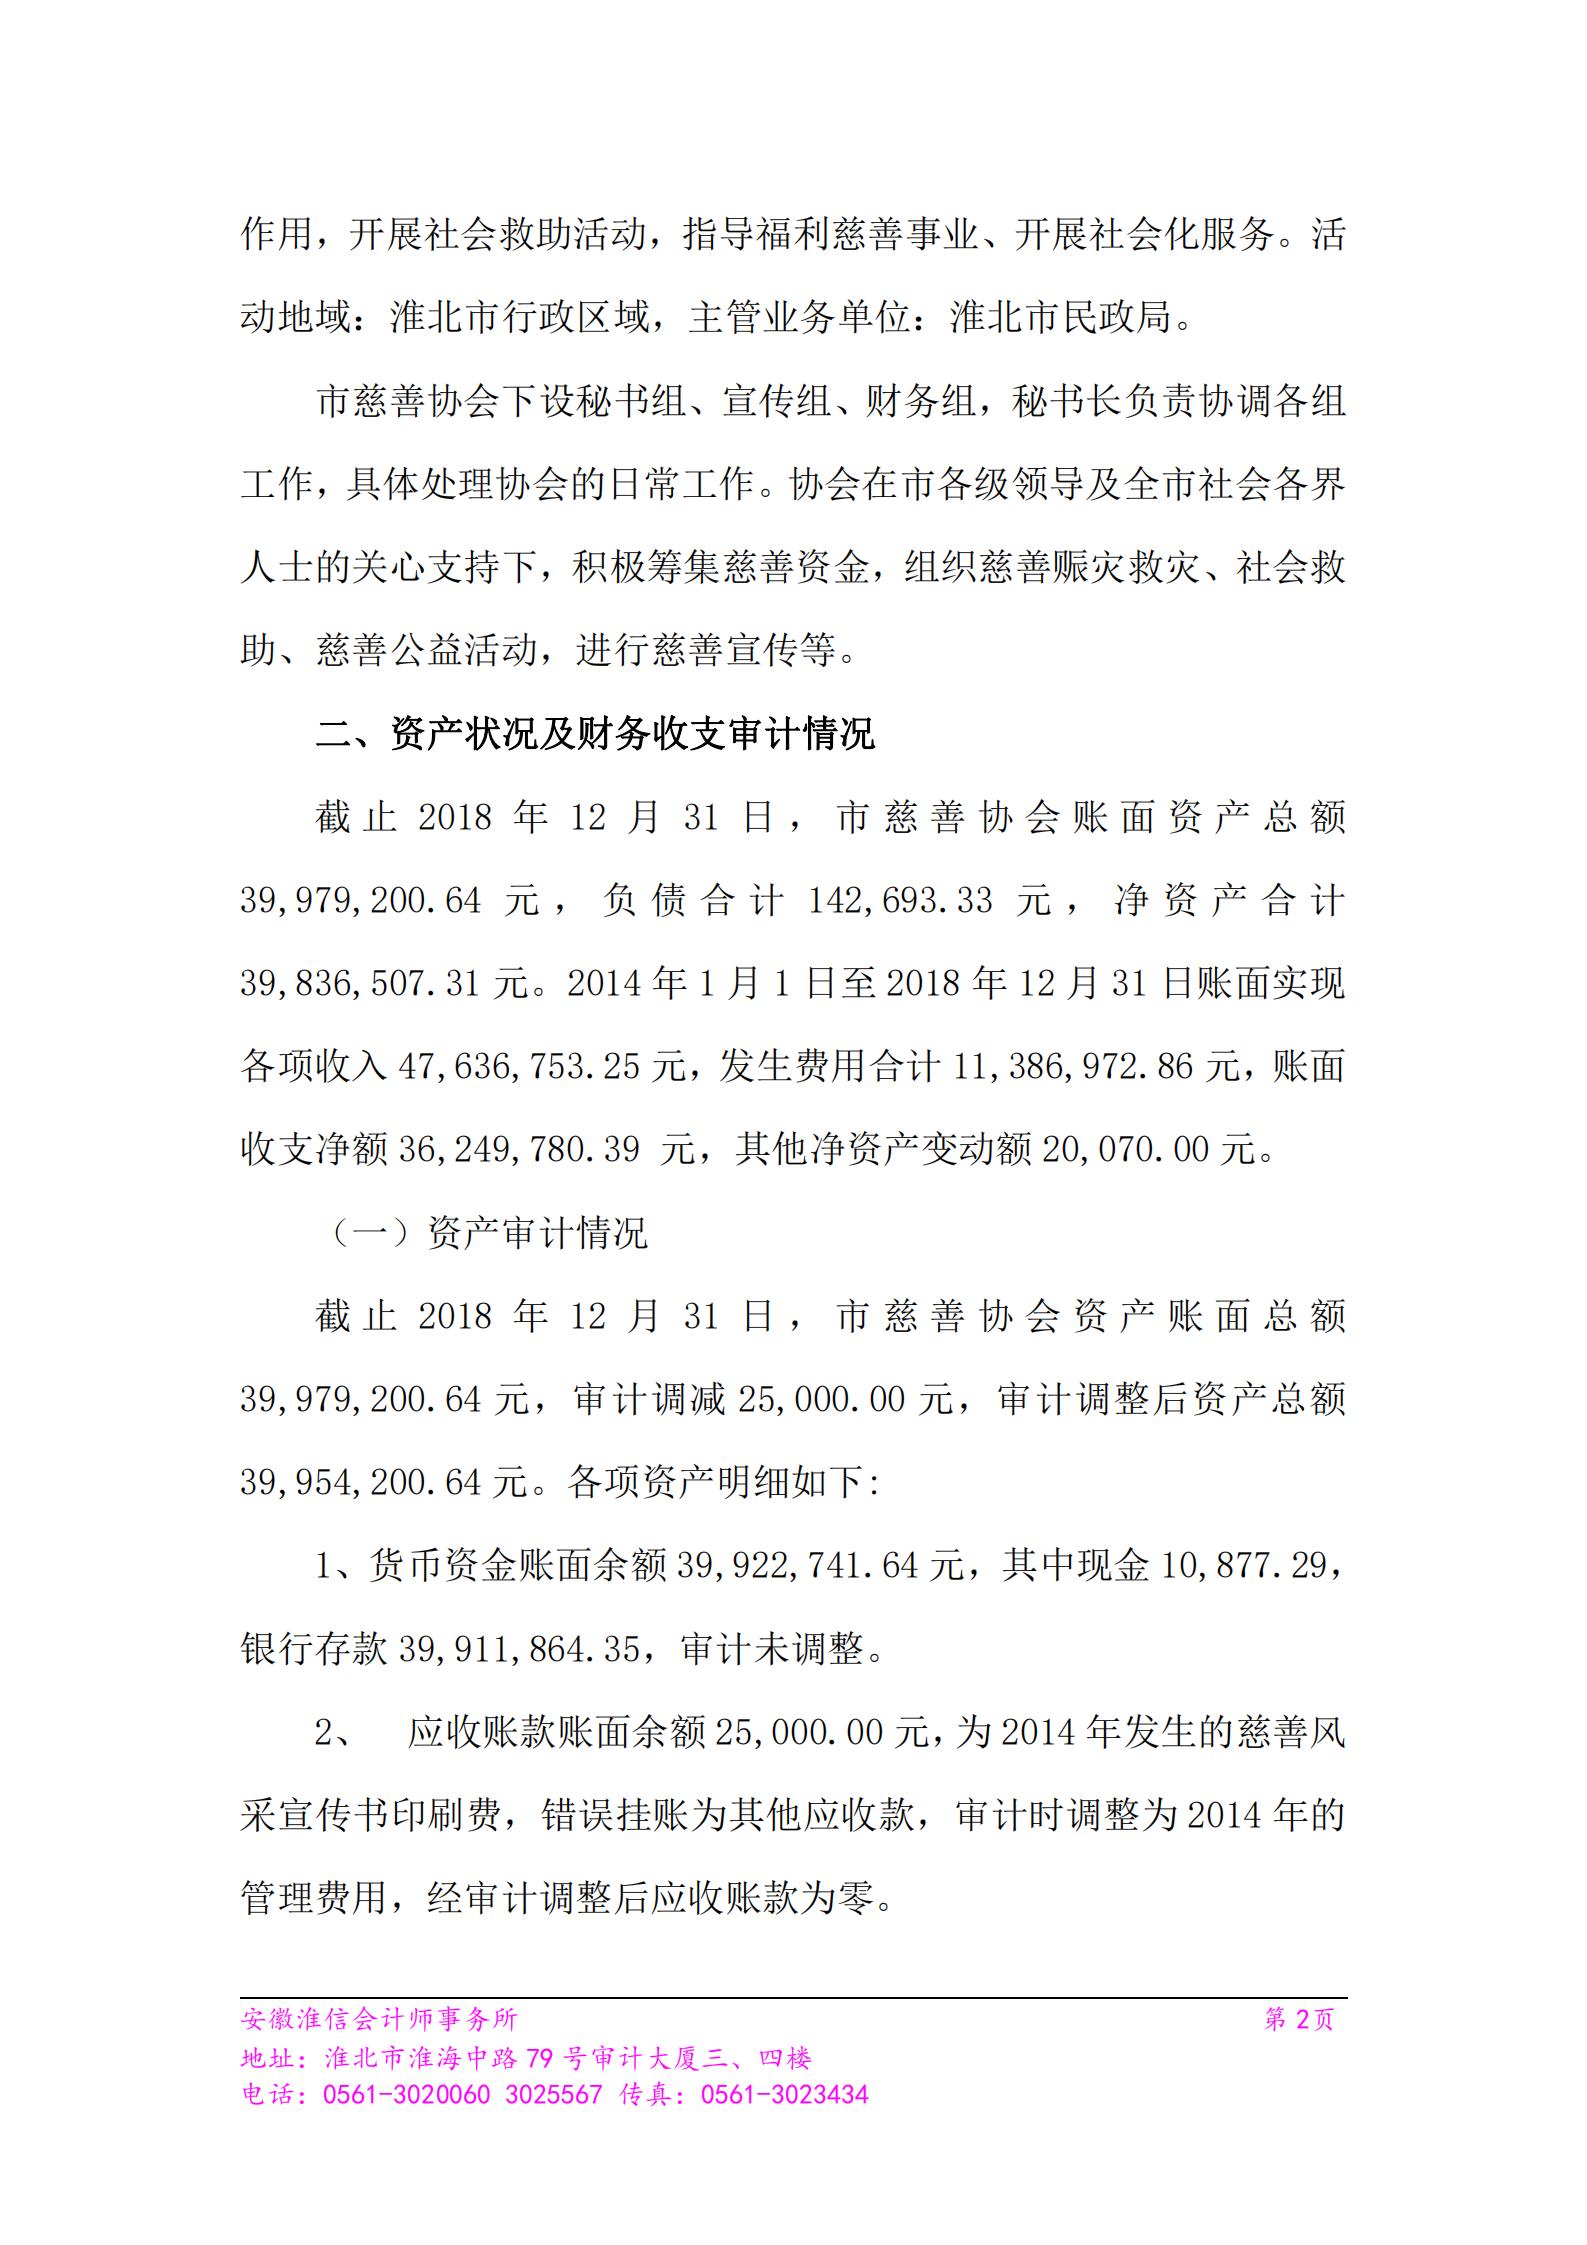 第三届理事会杜文灵会长离任审计报告（2014年1月--2019年9月）_01.jpg